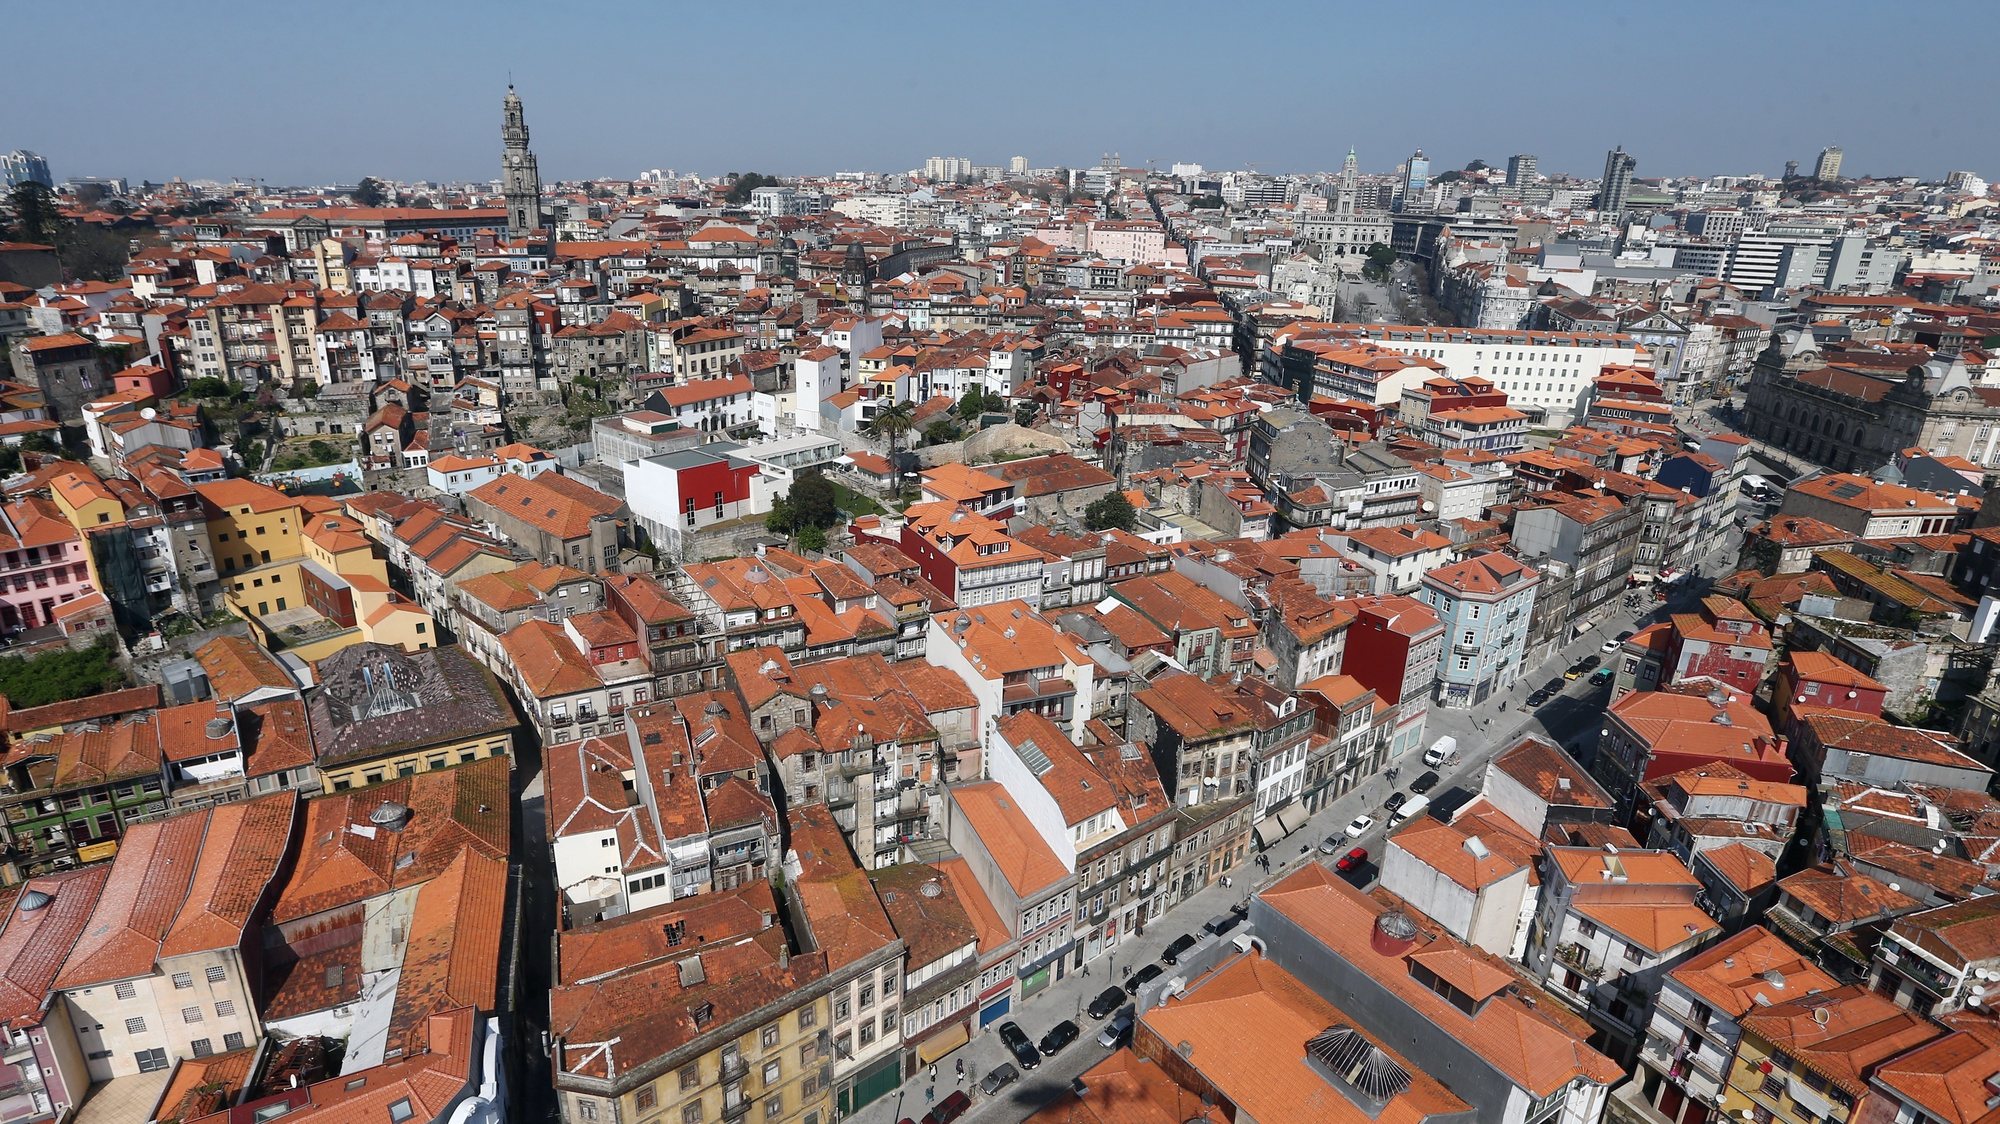 Vista aérea da cidade do Porto, 14 de março de 2014. JOSÉ COELHO / LUSA